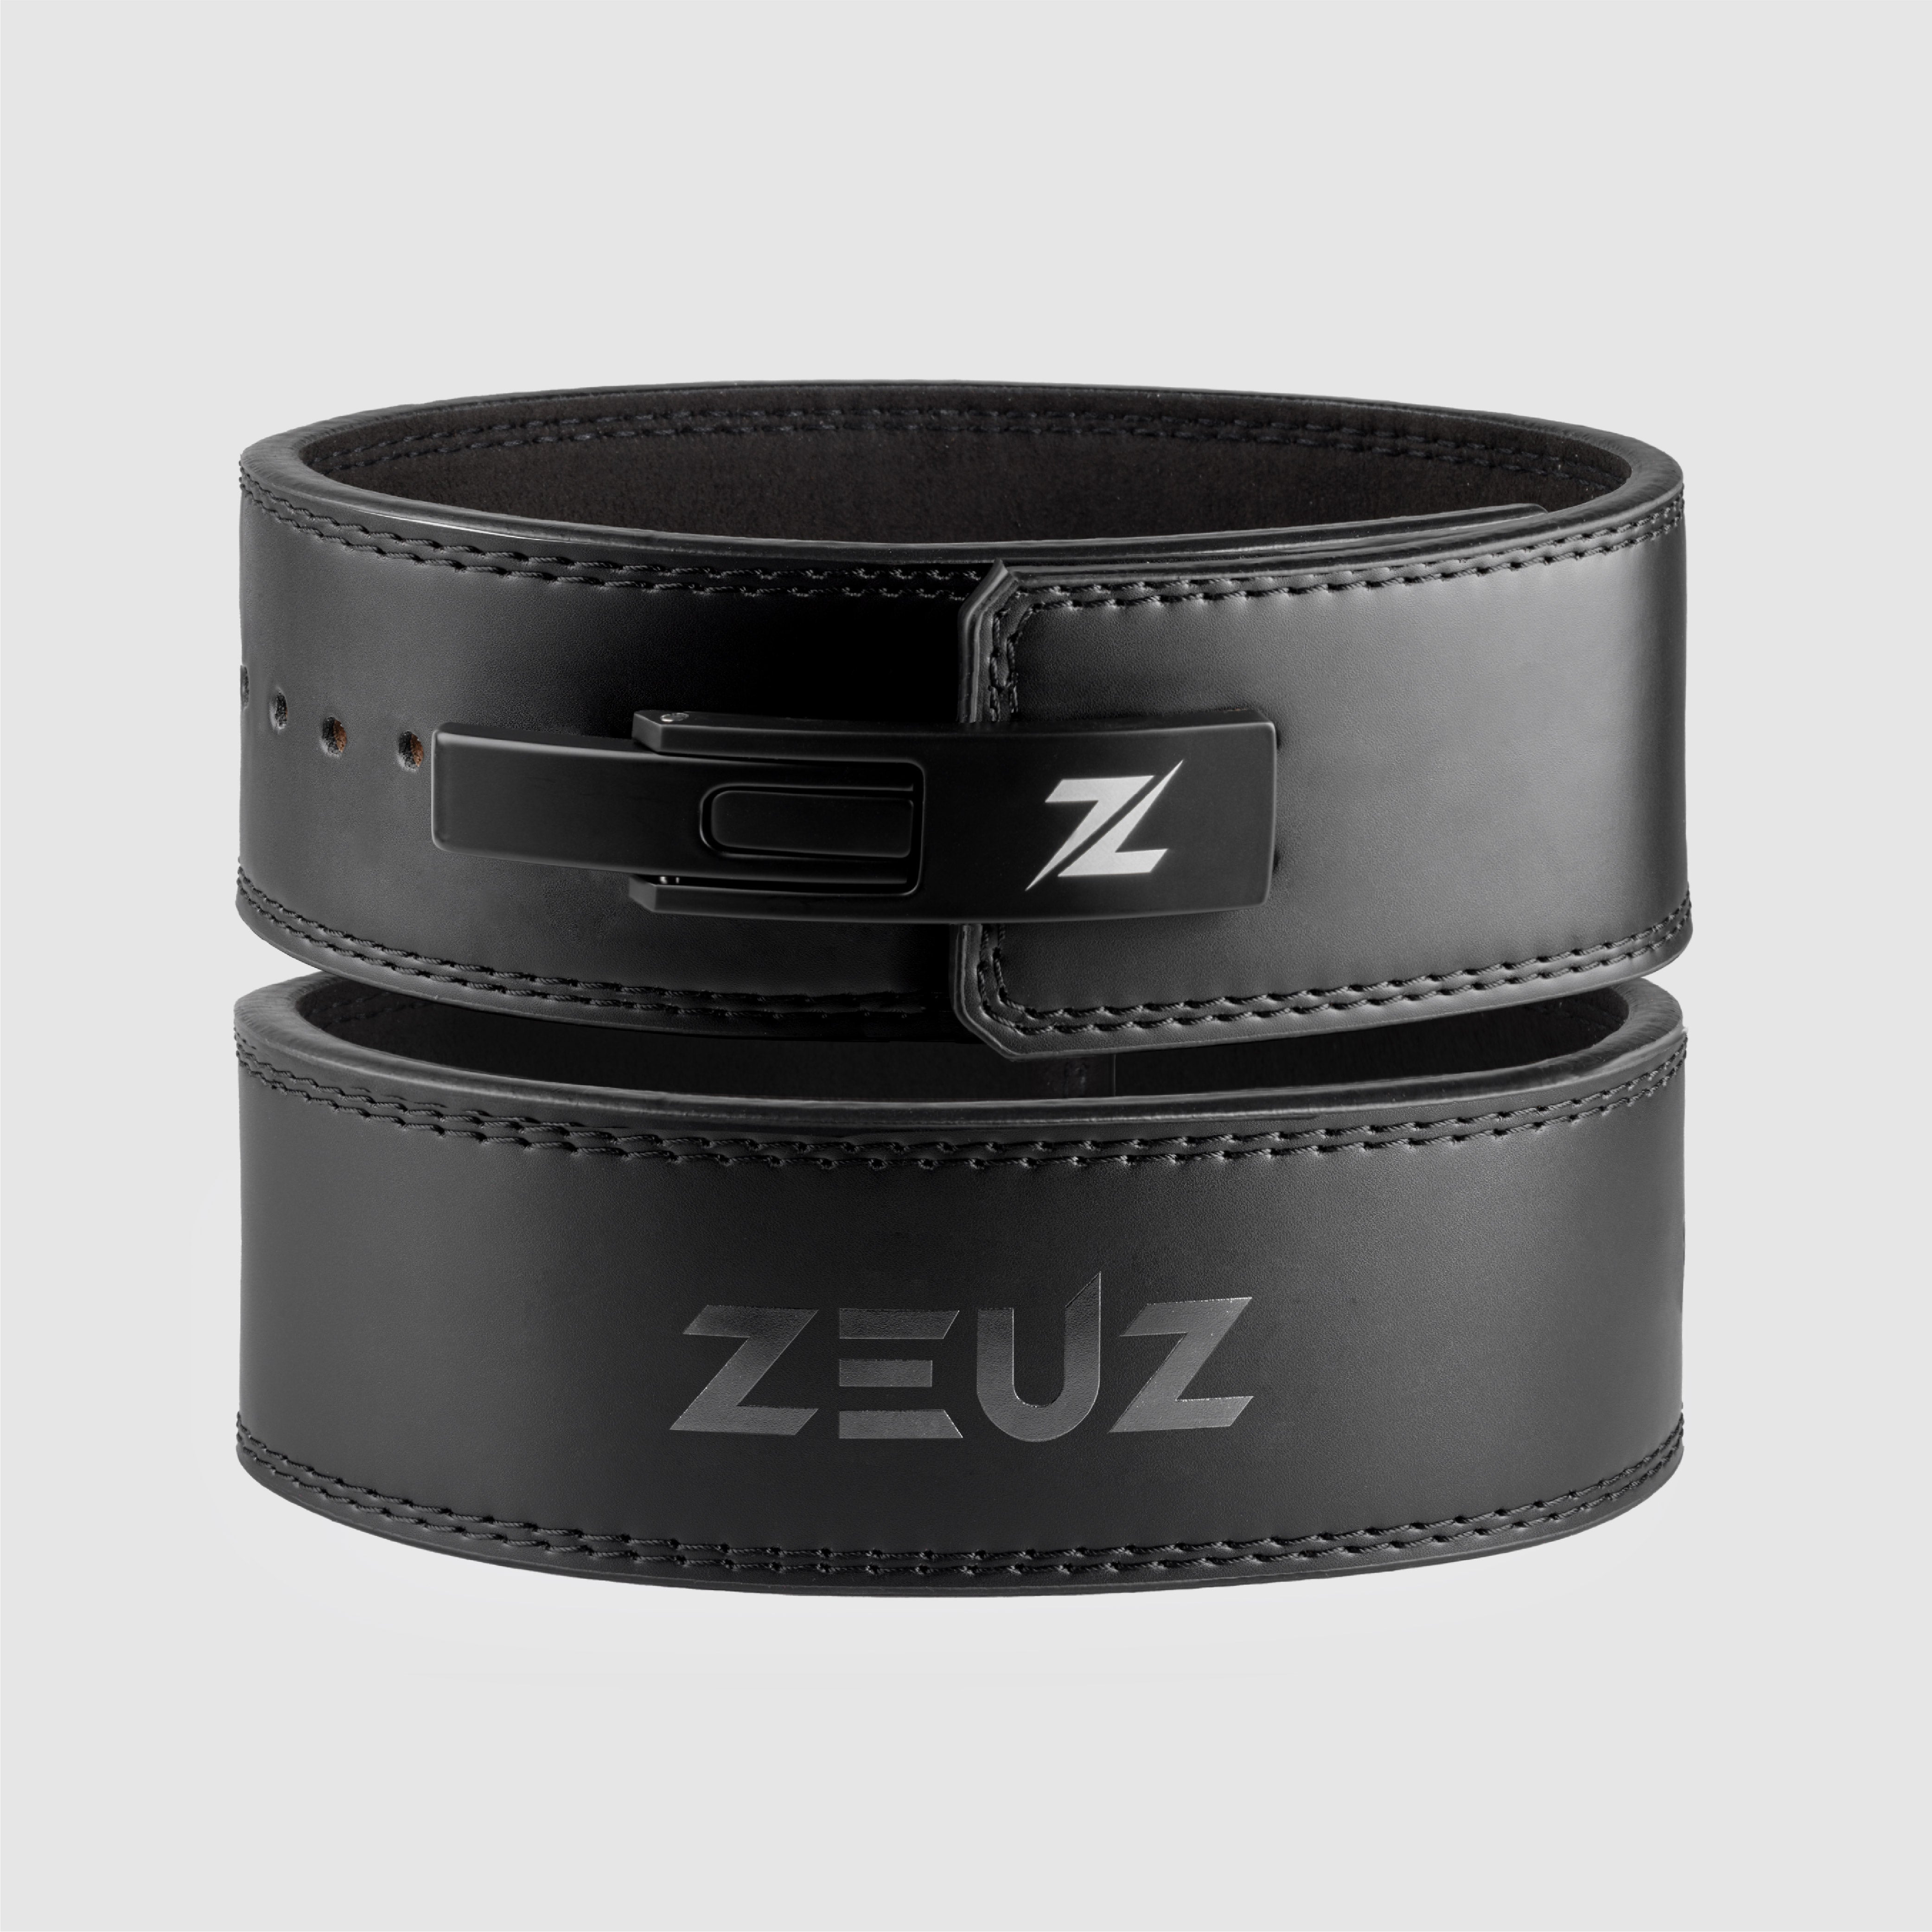 ZEUZ Black Leather Powerlift Belt - Leather Lifting Belt - Powerlifting